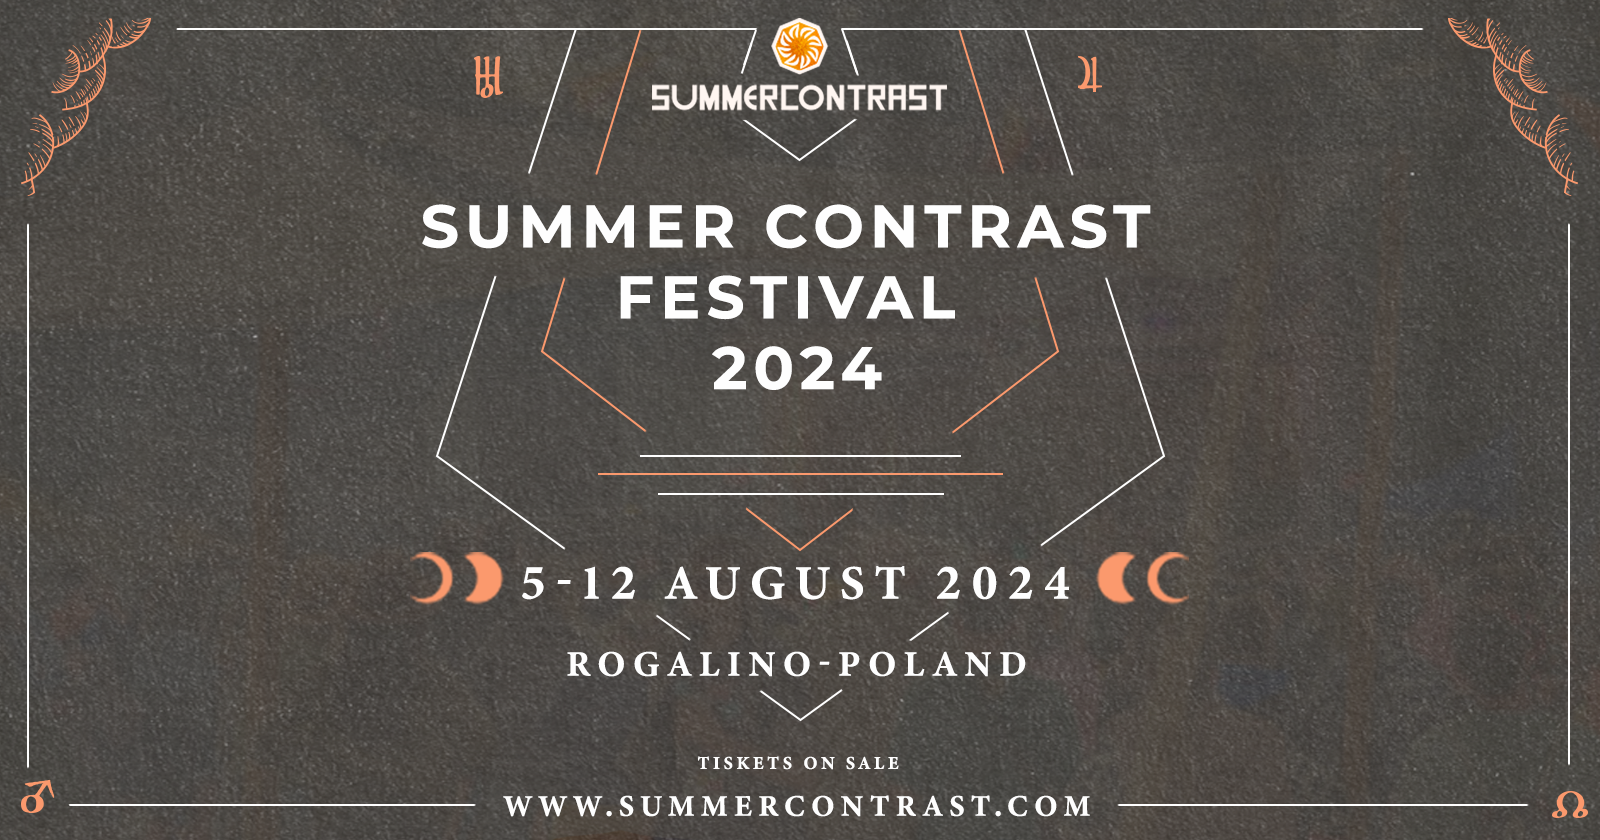 Summer Contrast Festival 2024 - フライヤー表